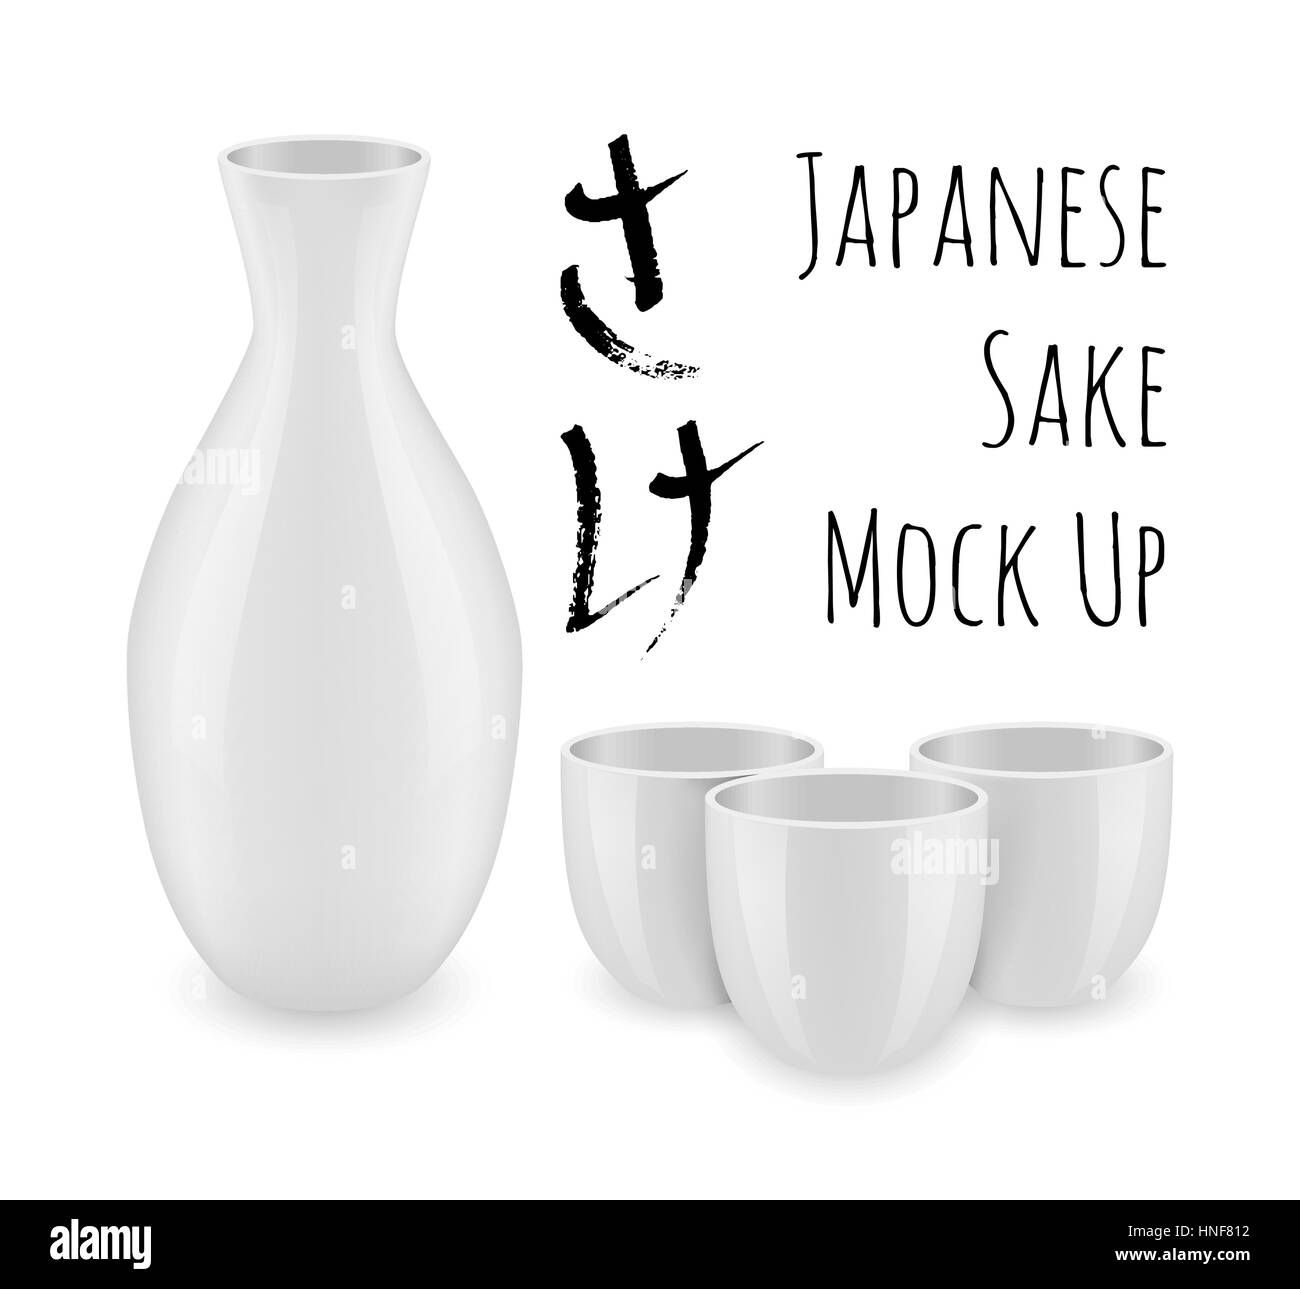 Japanese sake mock up Stock Vector